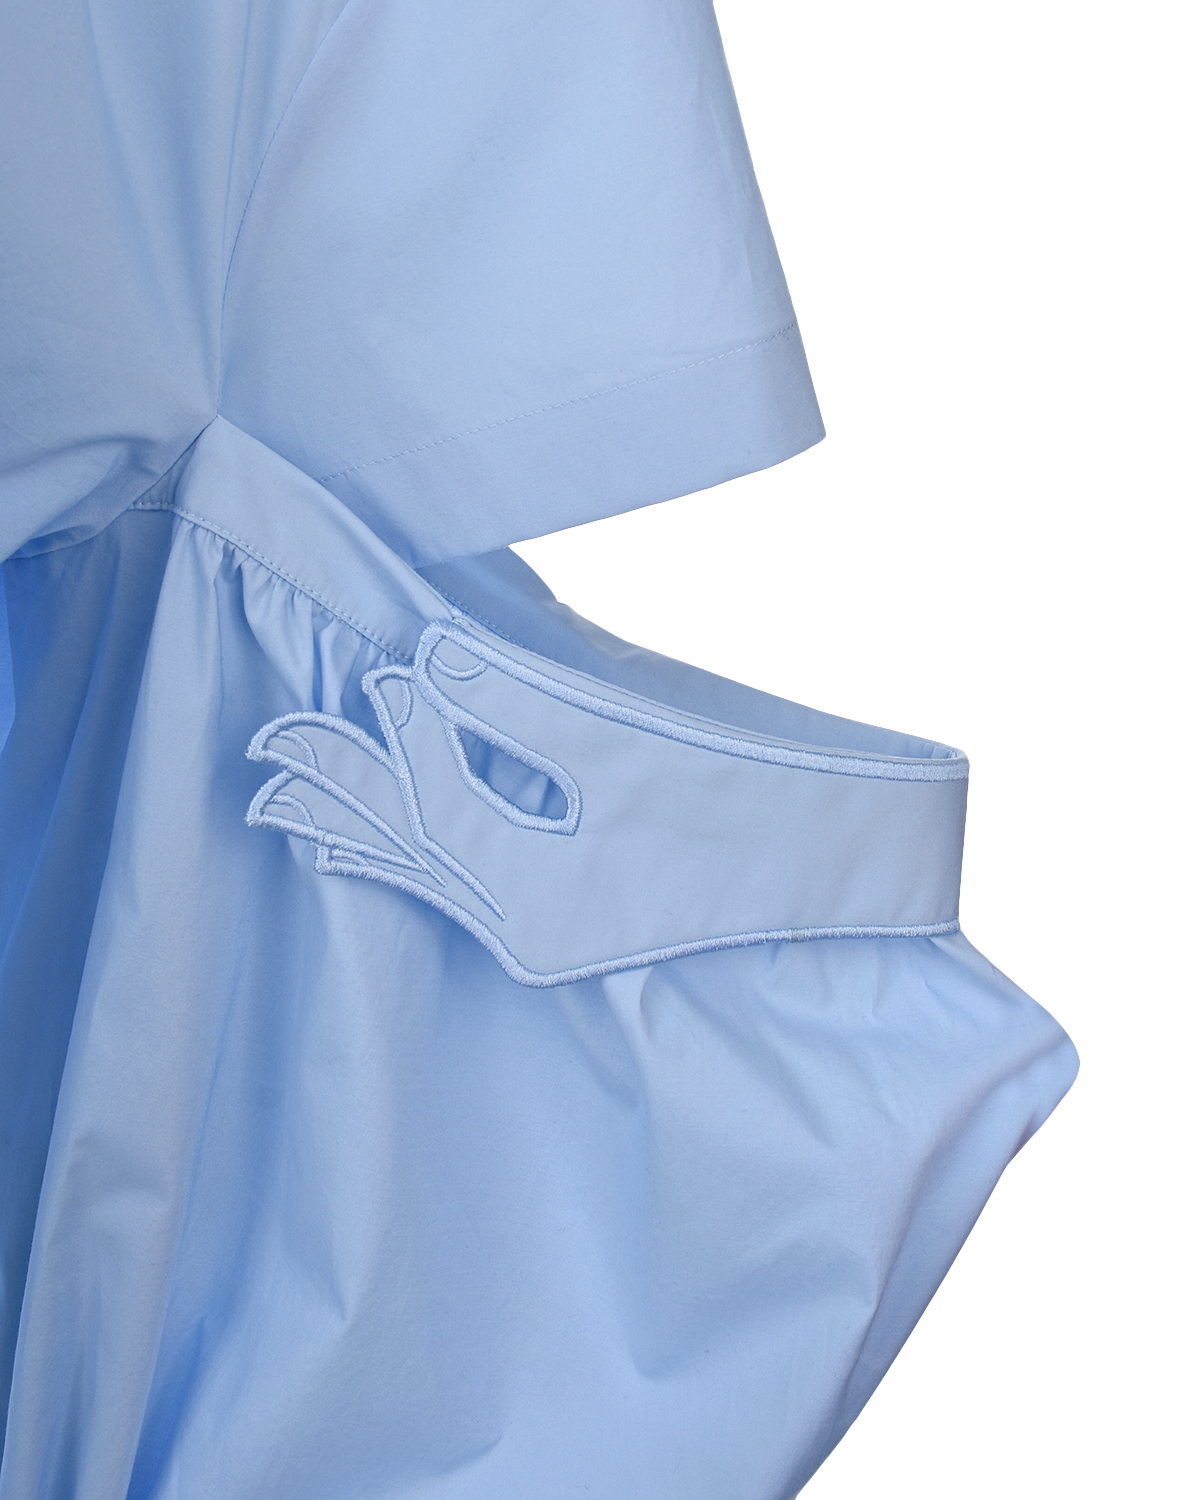 Голубое платье с разрезами на рукавах Vivetta, размер 40, цвет голубой - фото 7